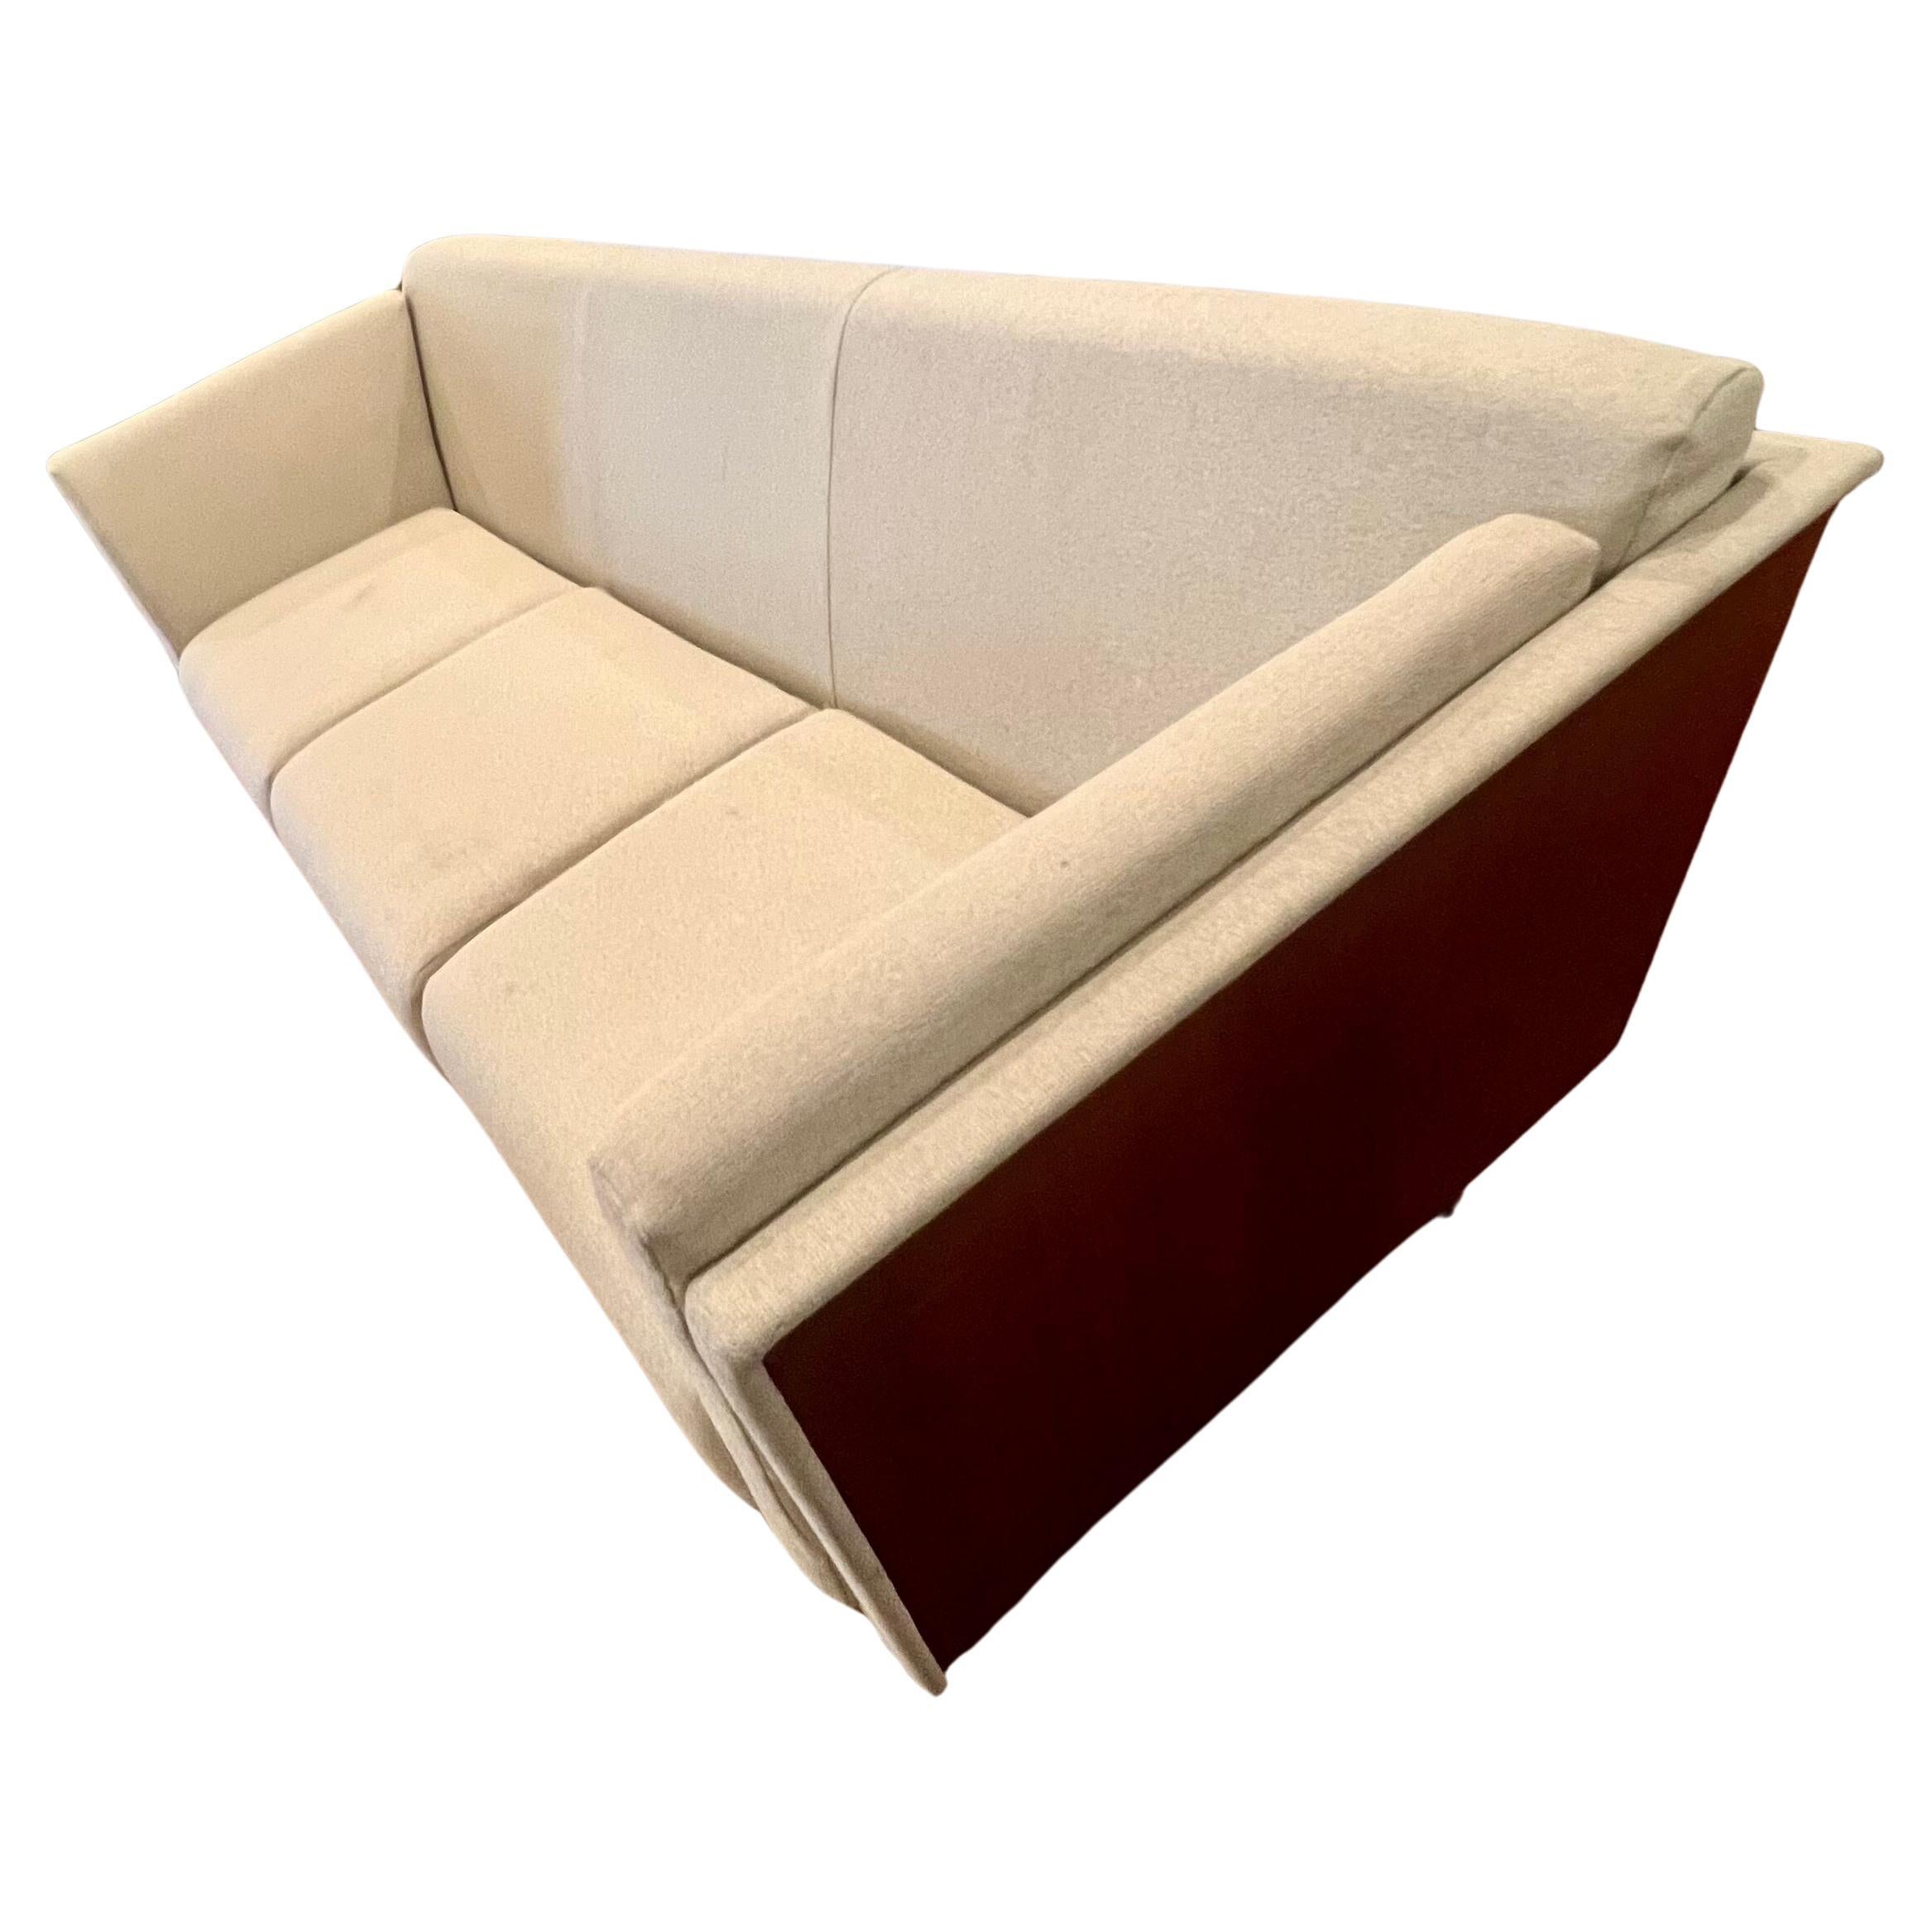 Dieses unglaubliche Goetz-Sofa von Mark Goetz für Herman Miller zeichnet sich durch ein Gehäuse aus Kirsche, eine hochwertige Polsterung und Aluminiumbeine aus. Entworfen im Jahr 1998, einige leichte Flecken wie gezeigt verkauft AS/IS Zustand.